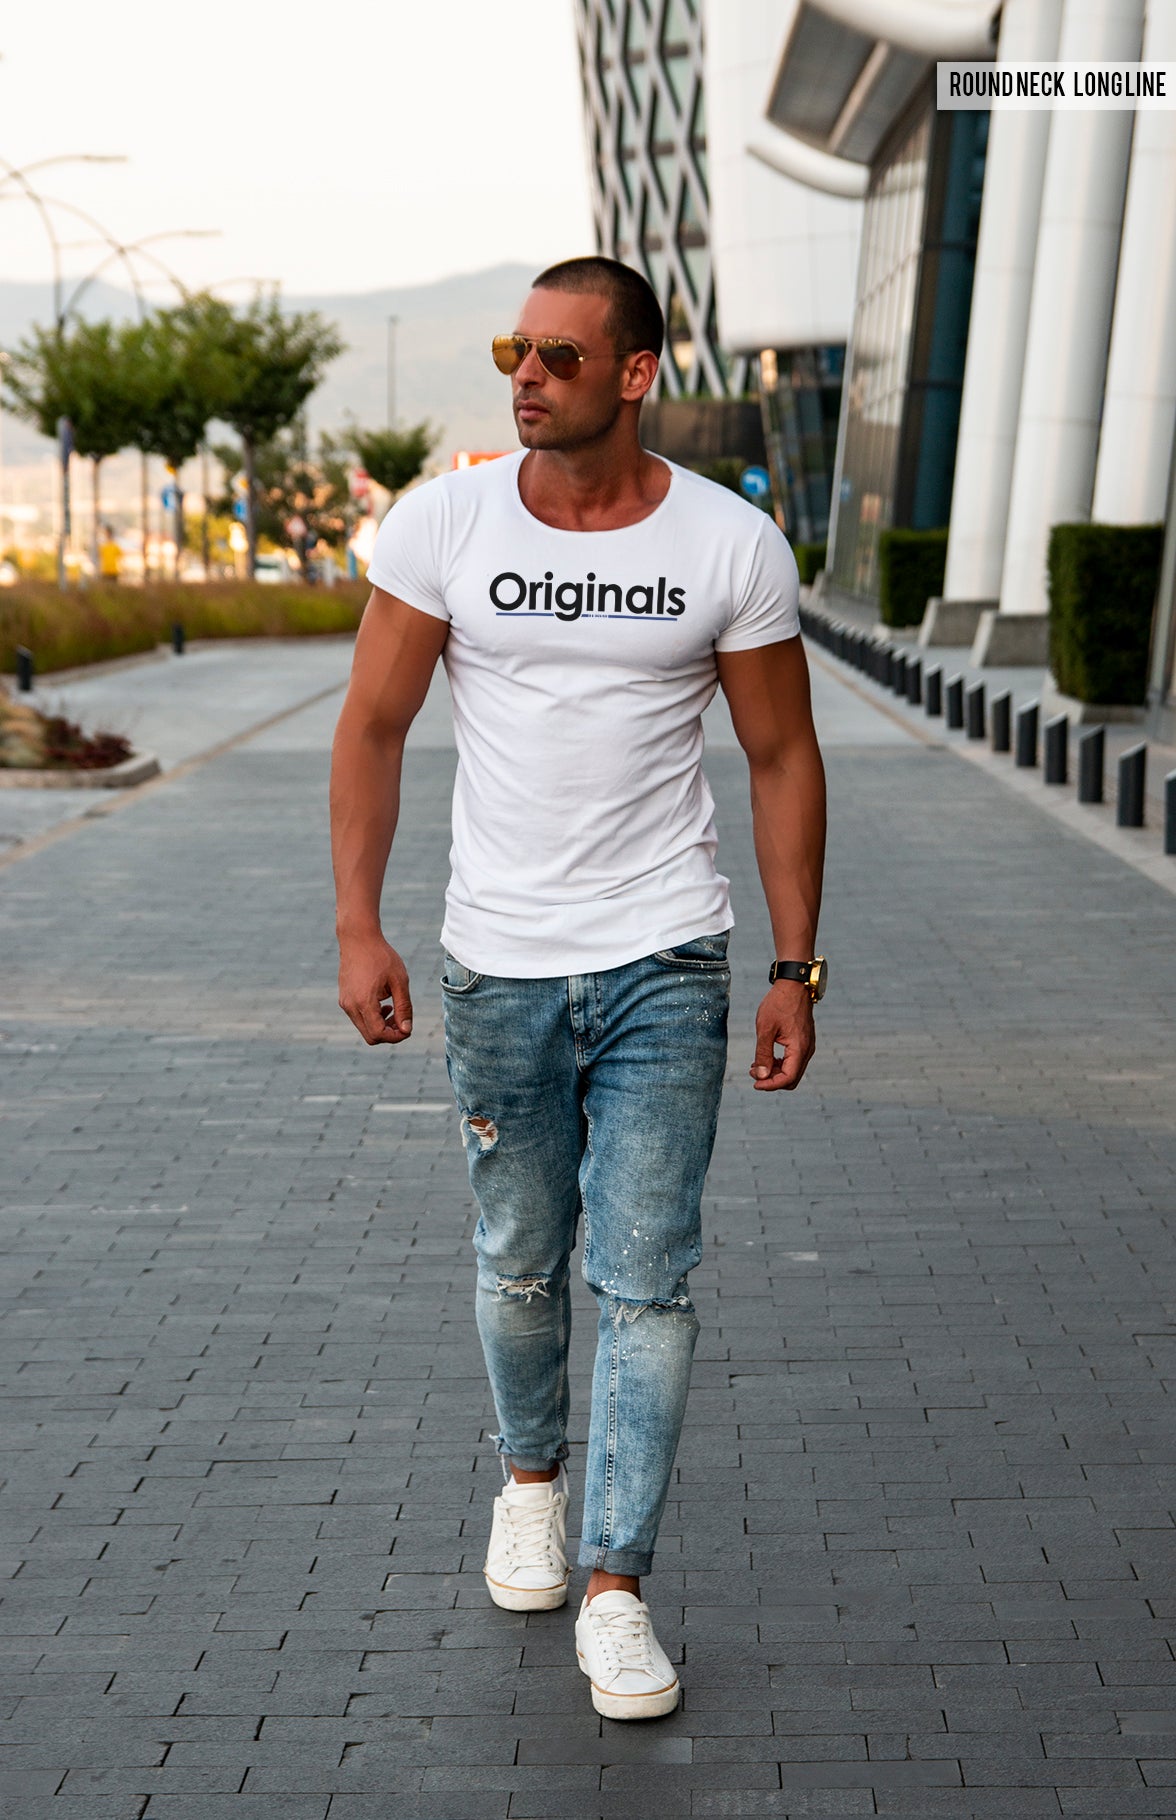 Мen's T-shirt  "Originals" MD963